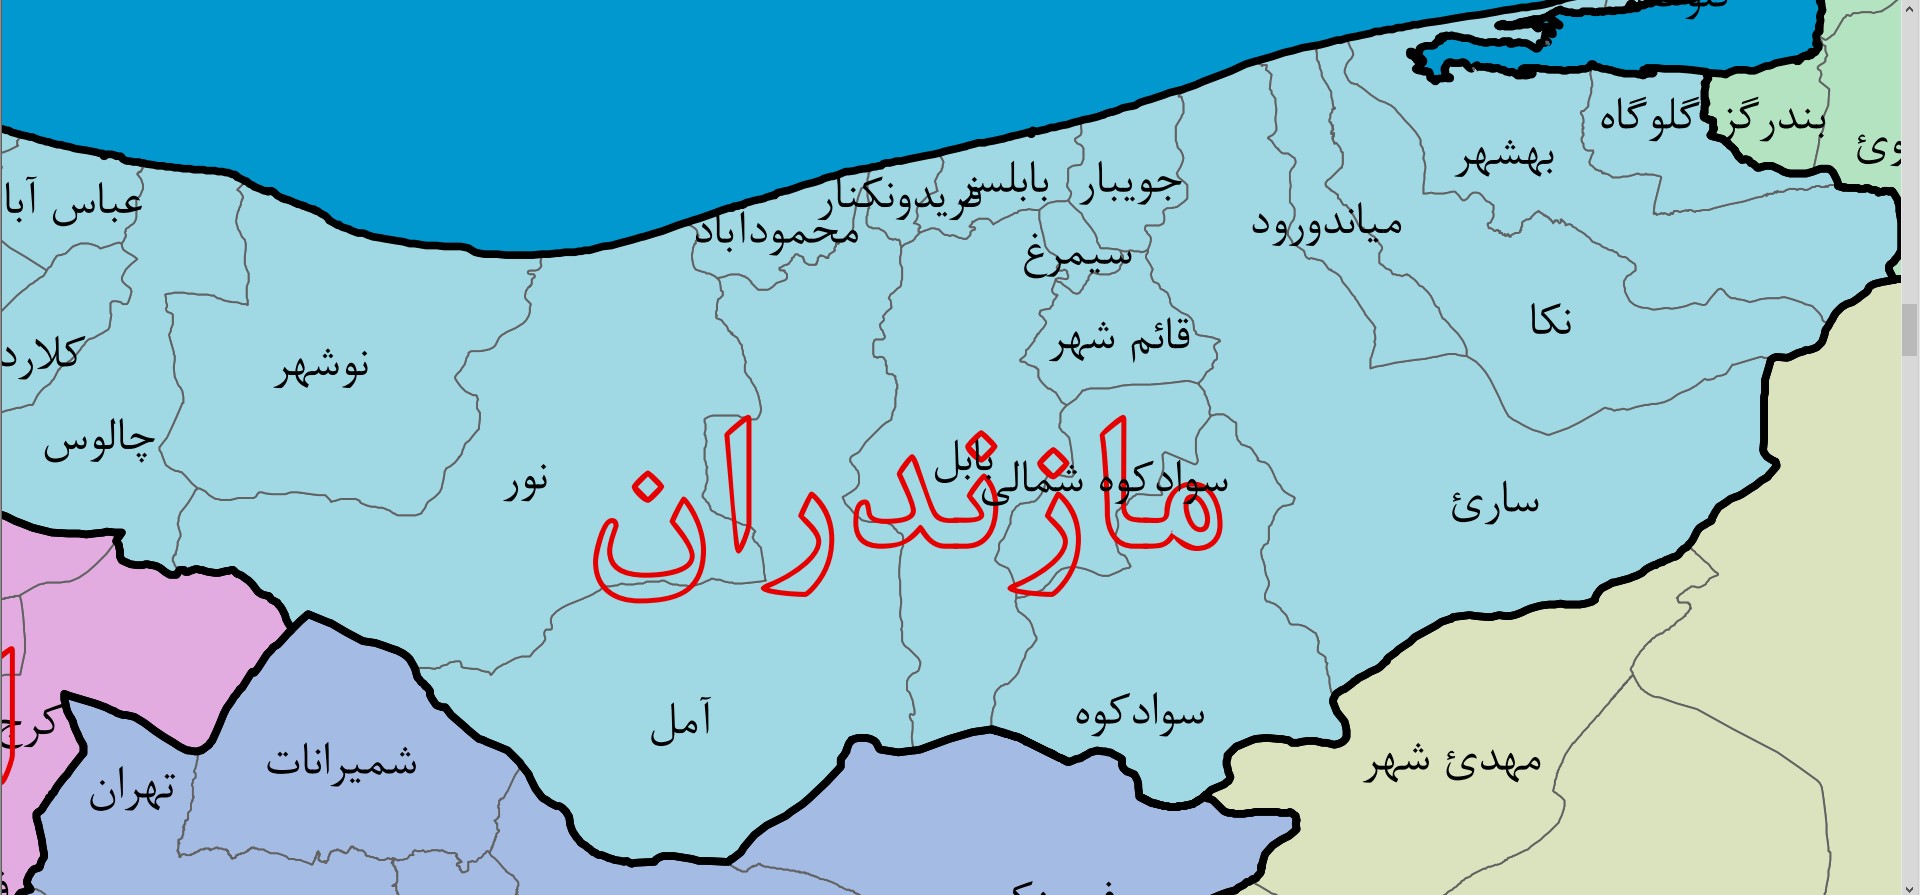 نقشه PDF ایران به تفکیک استان ها و شهرستان ها با زوم نامحدود